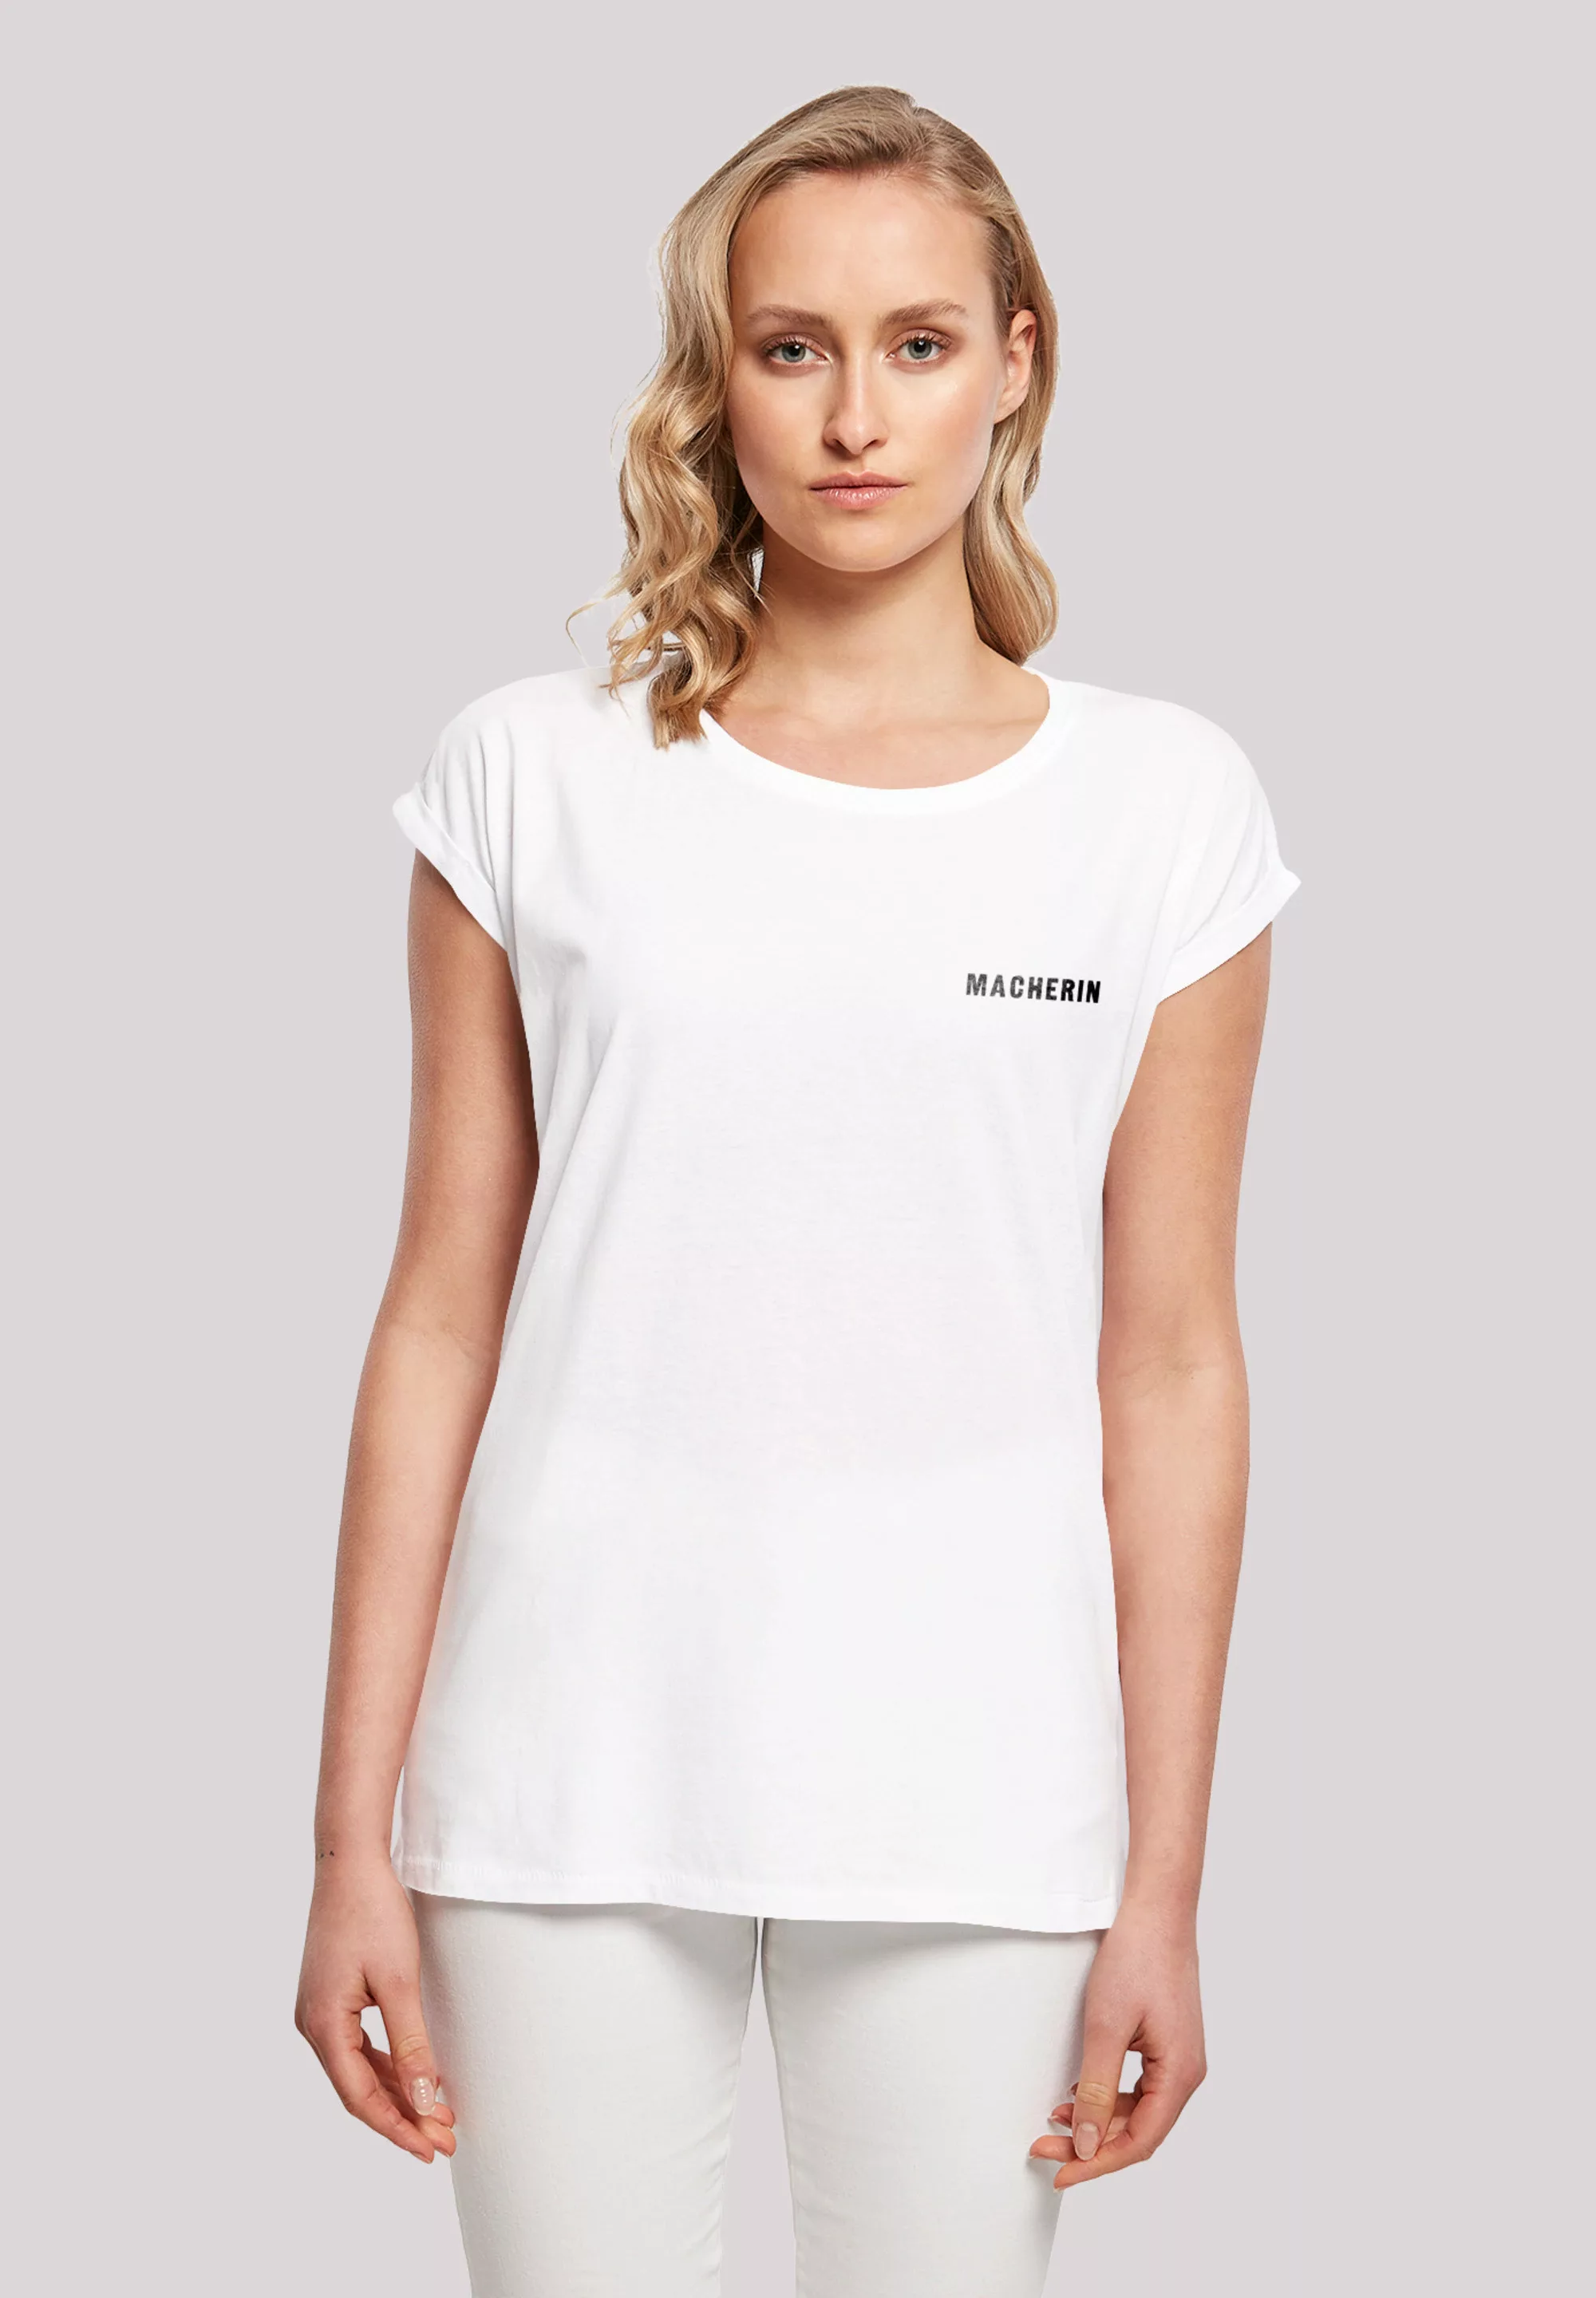 F4NT4STIC T-Shirt "Macherin" günstig online kaufen